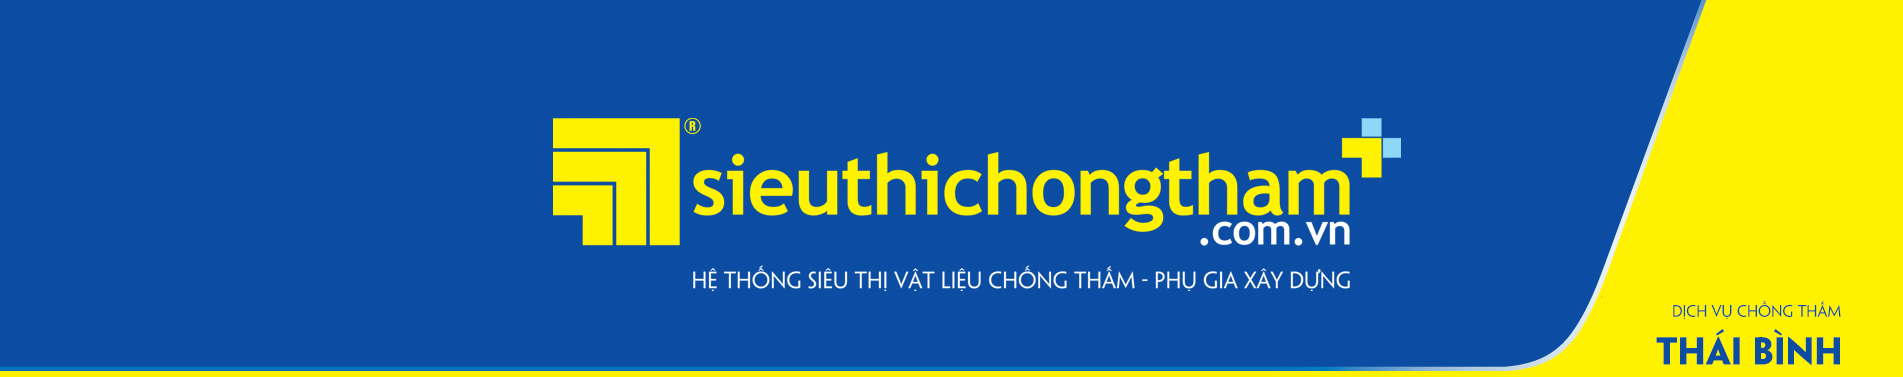 Dich Vu Chong Tham Thai Binh